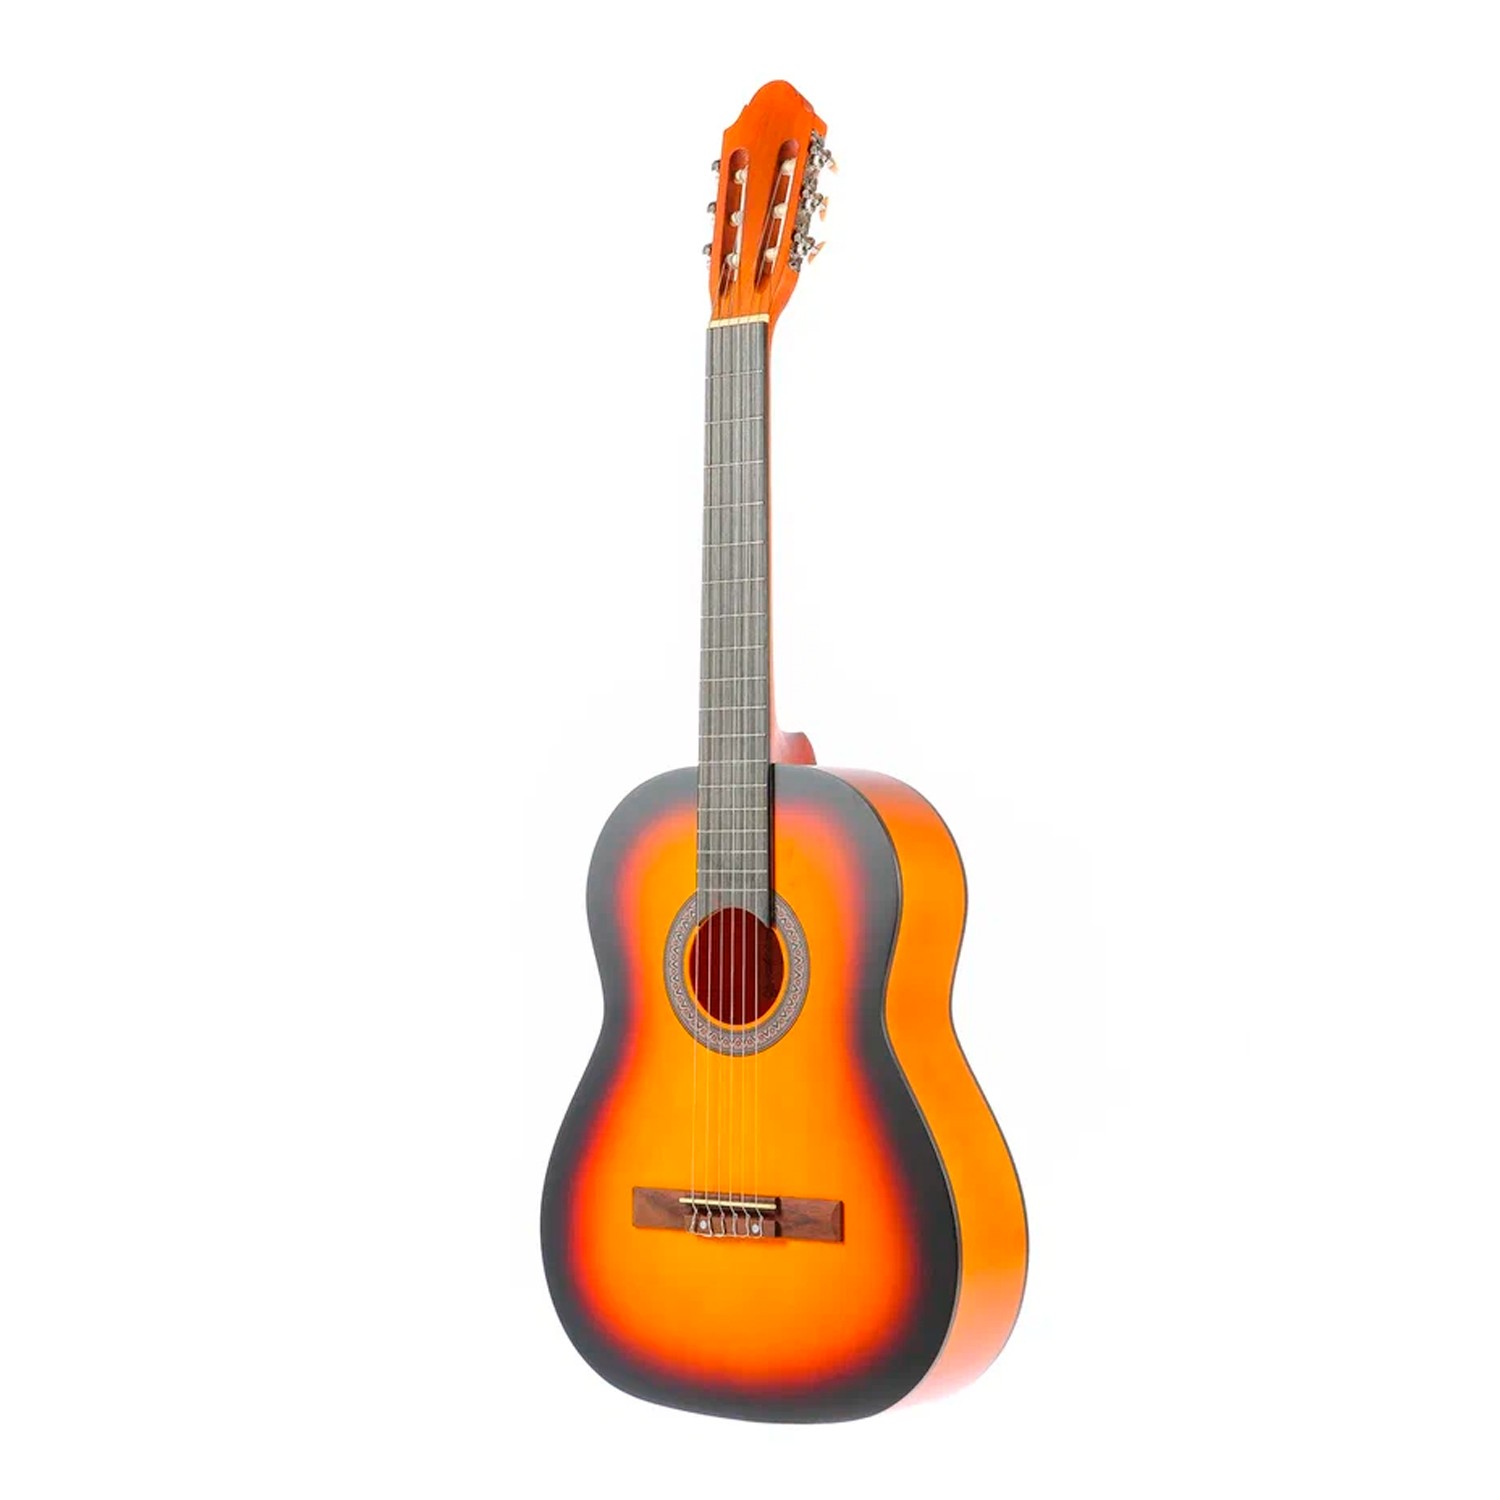 Классическая гитара Fabio KM3911 SB